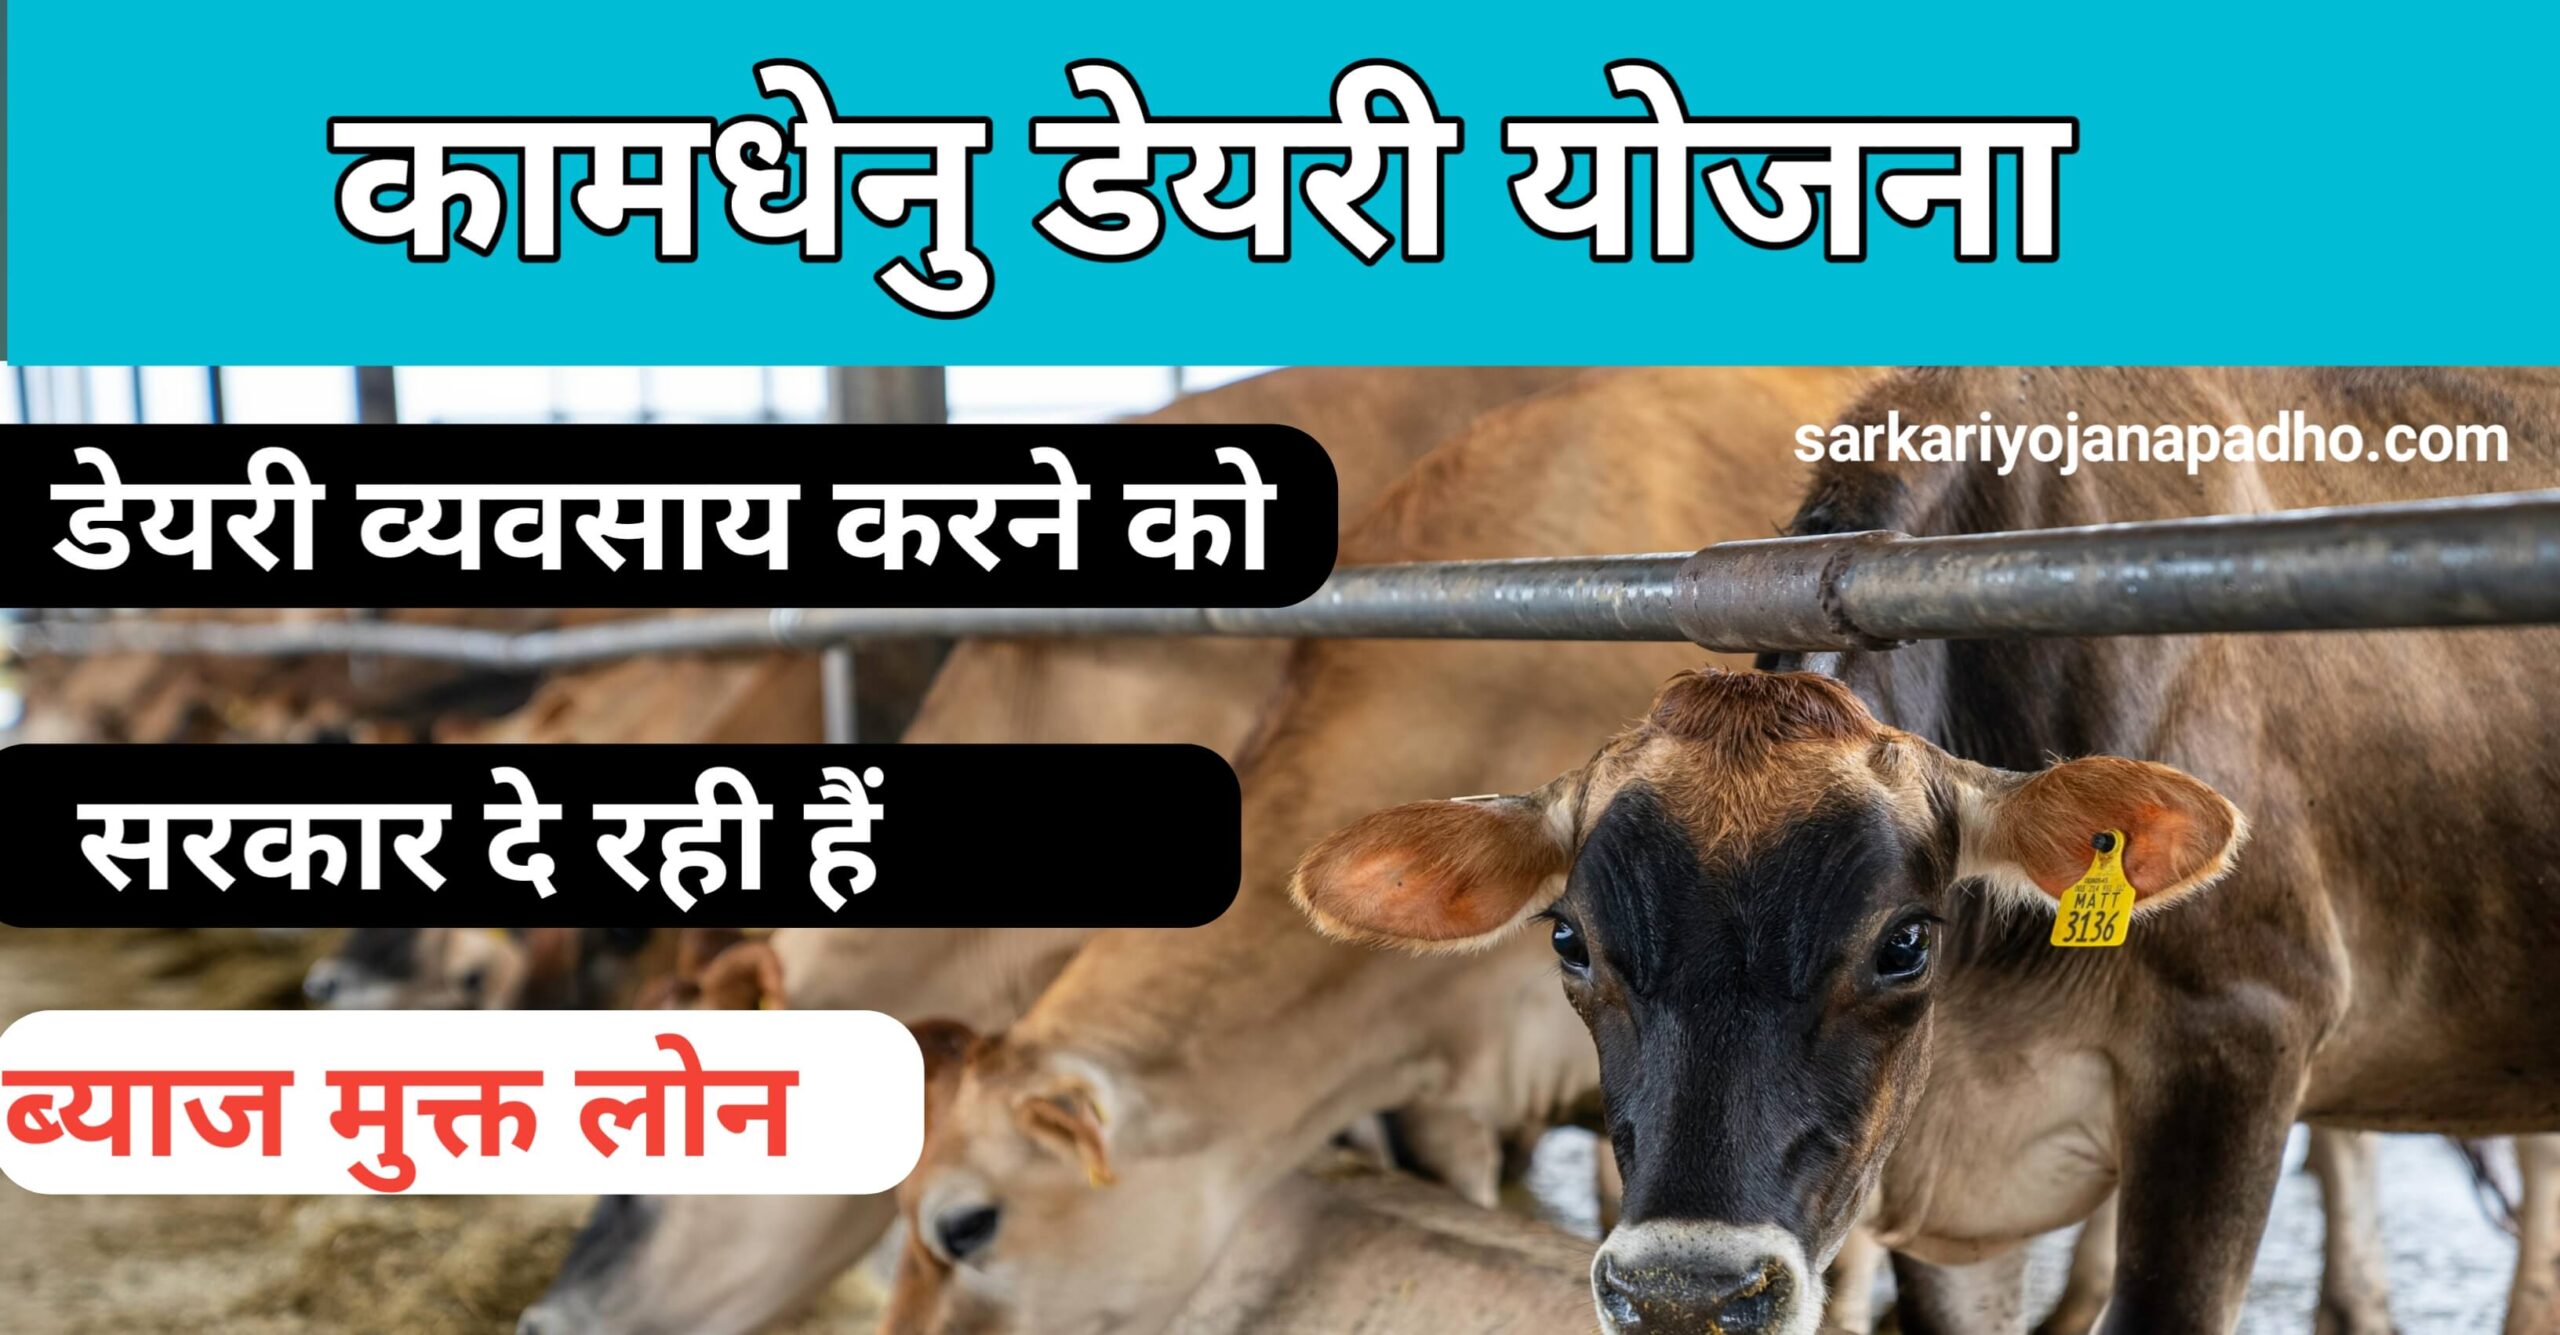 Rajasthan kamdhenu dairy yojana apply online 